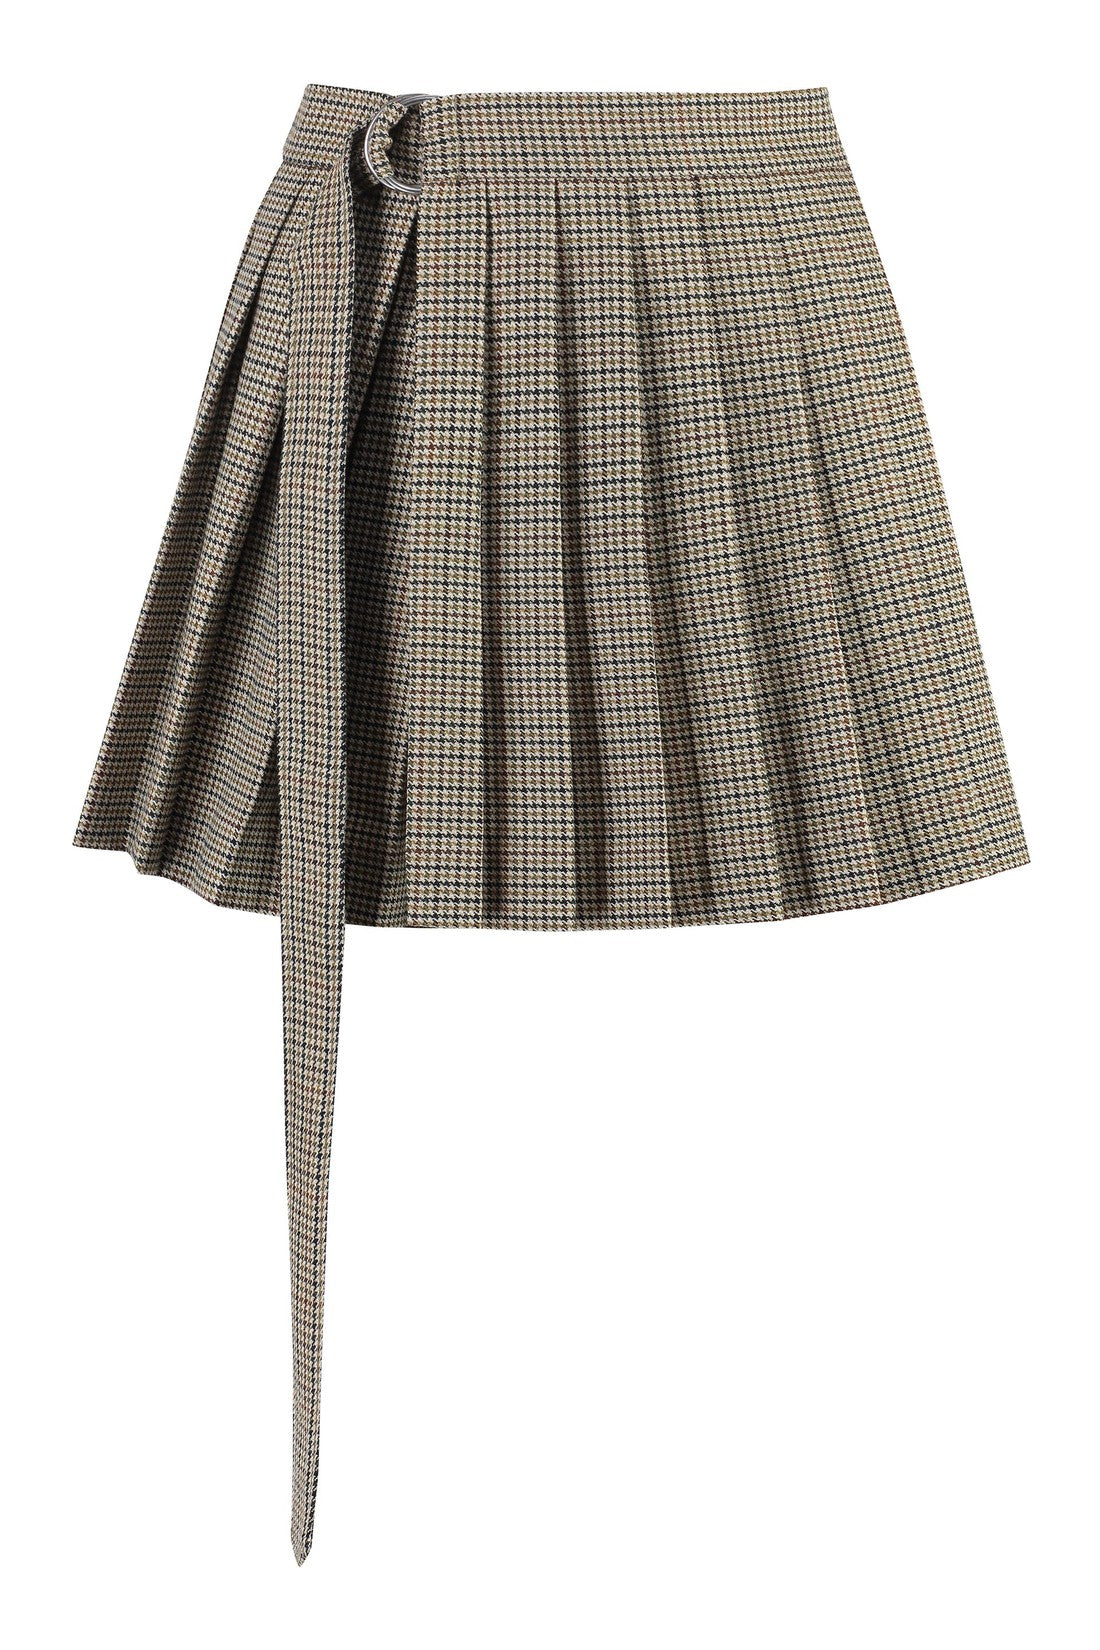 AMI PARIS-OUTLET-SALE-Wool mini skirt-ARCHIVIST